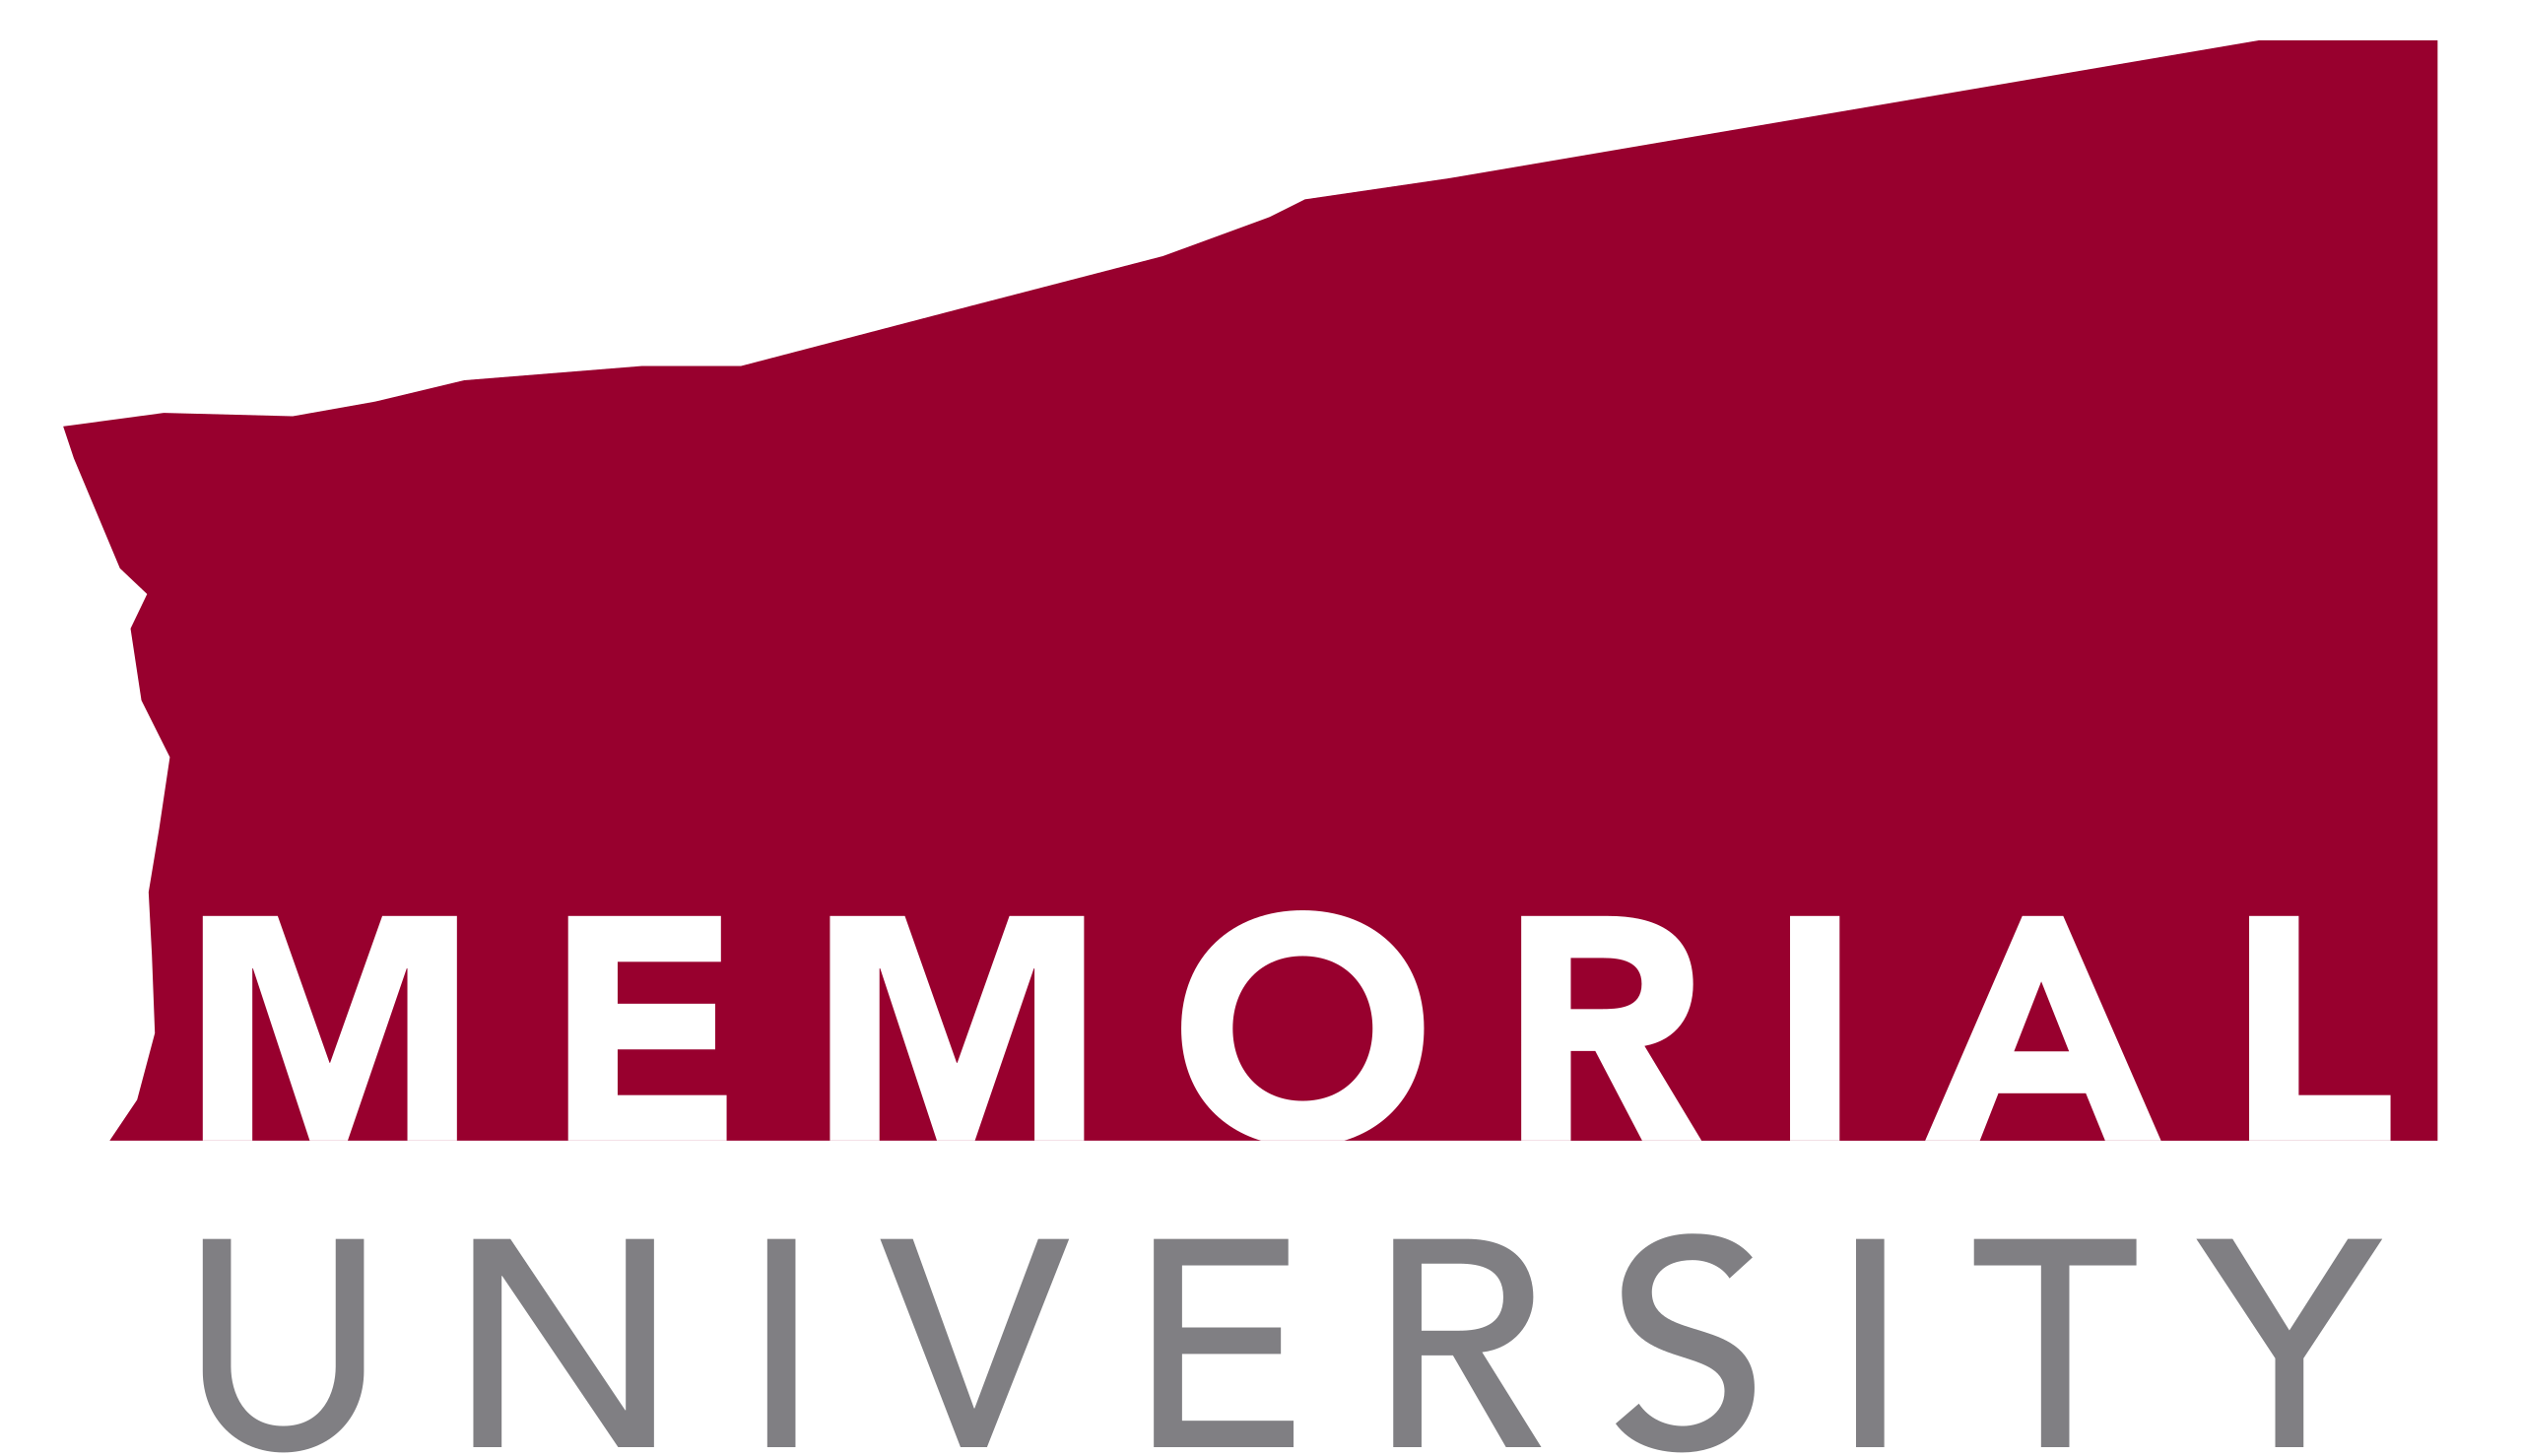 Newfoundland and Labrador's University Logo